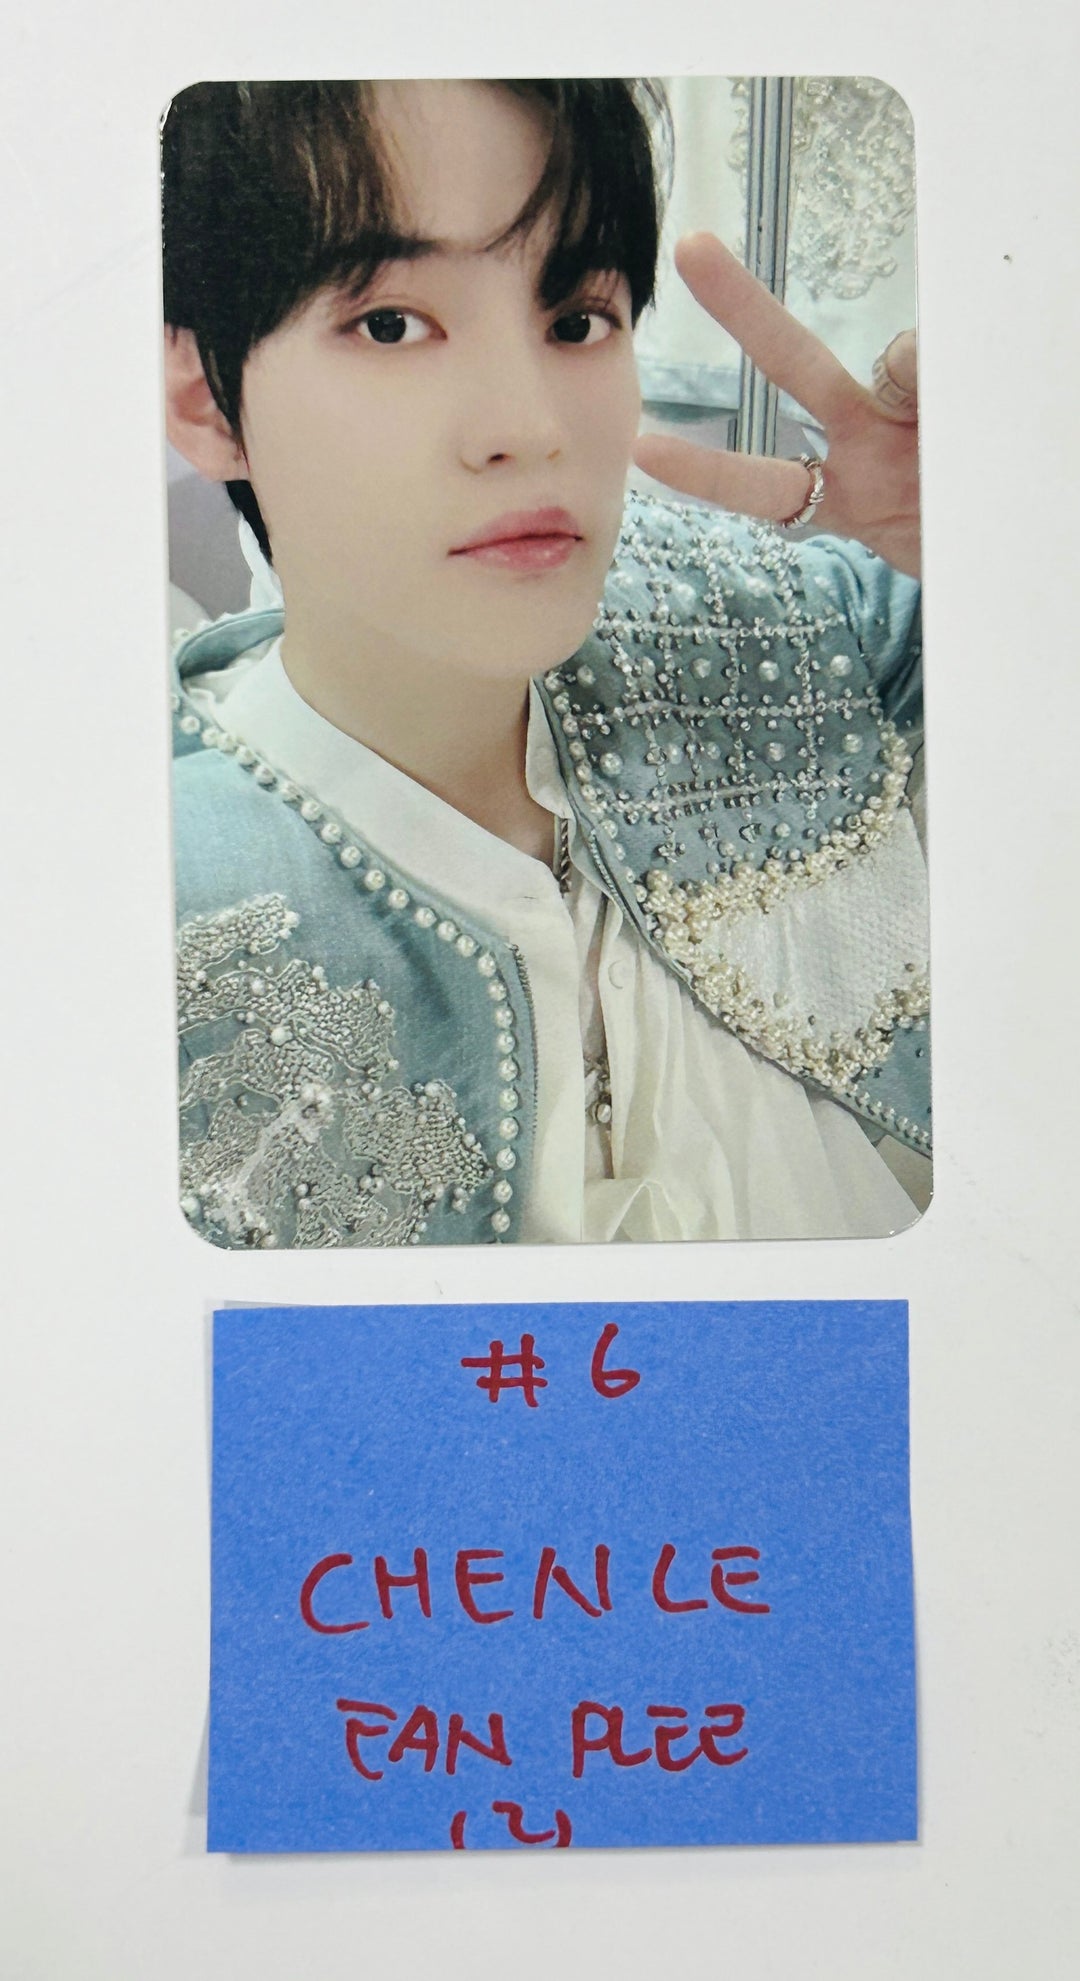 NCT DREAM "DREAM( )SCAPE" - Fanplee Pre-Order Benefit Photocard [24.4.17]